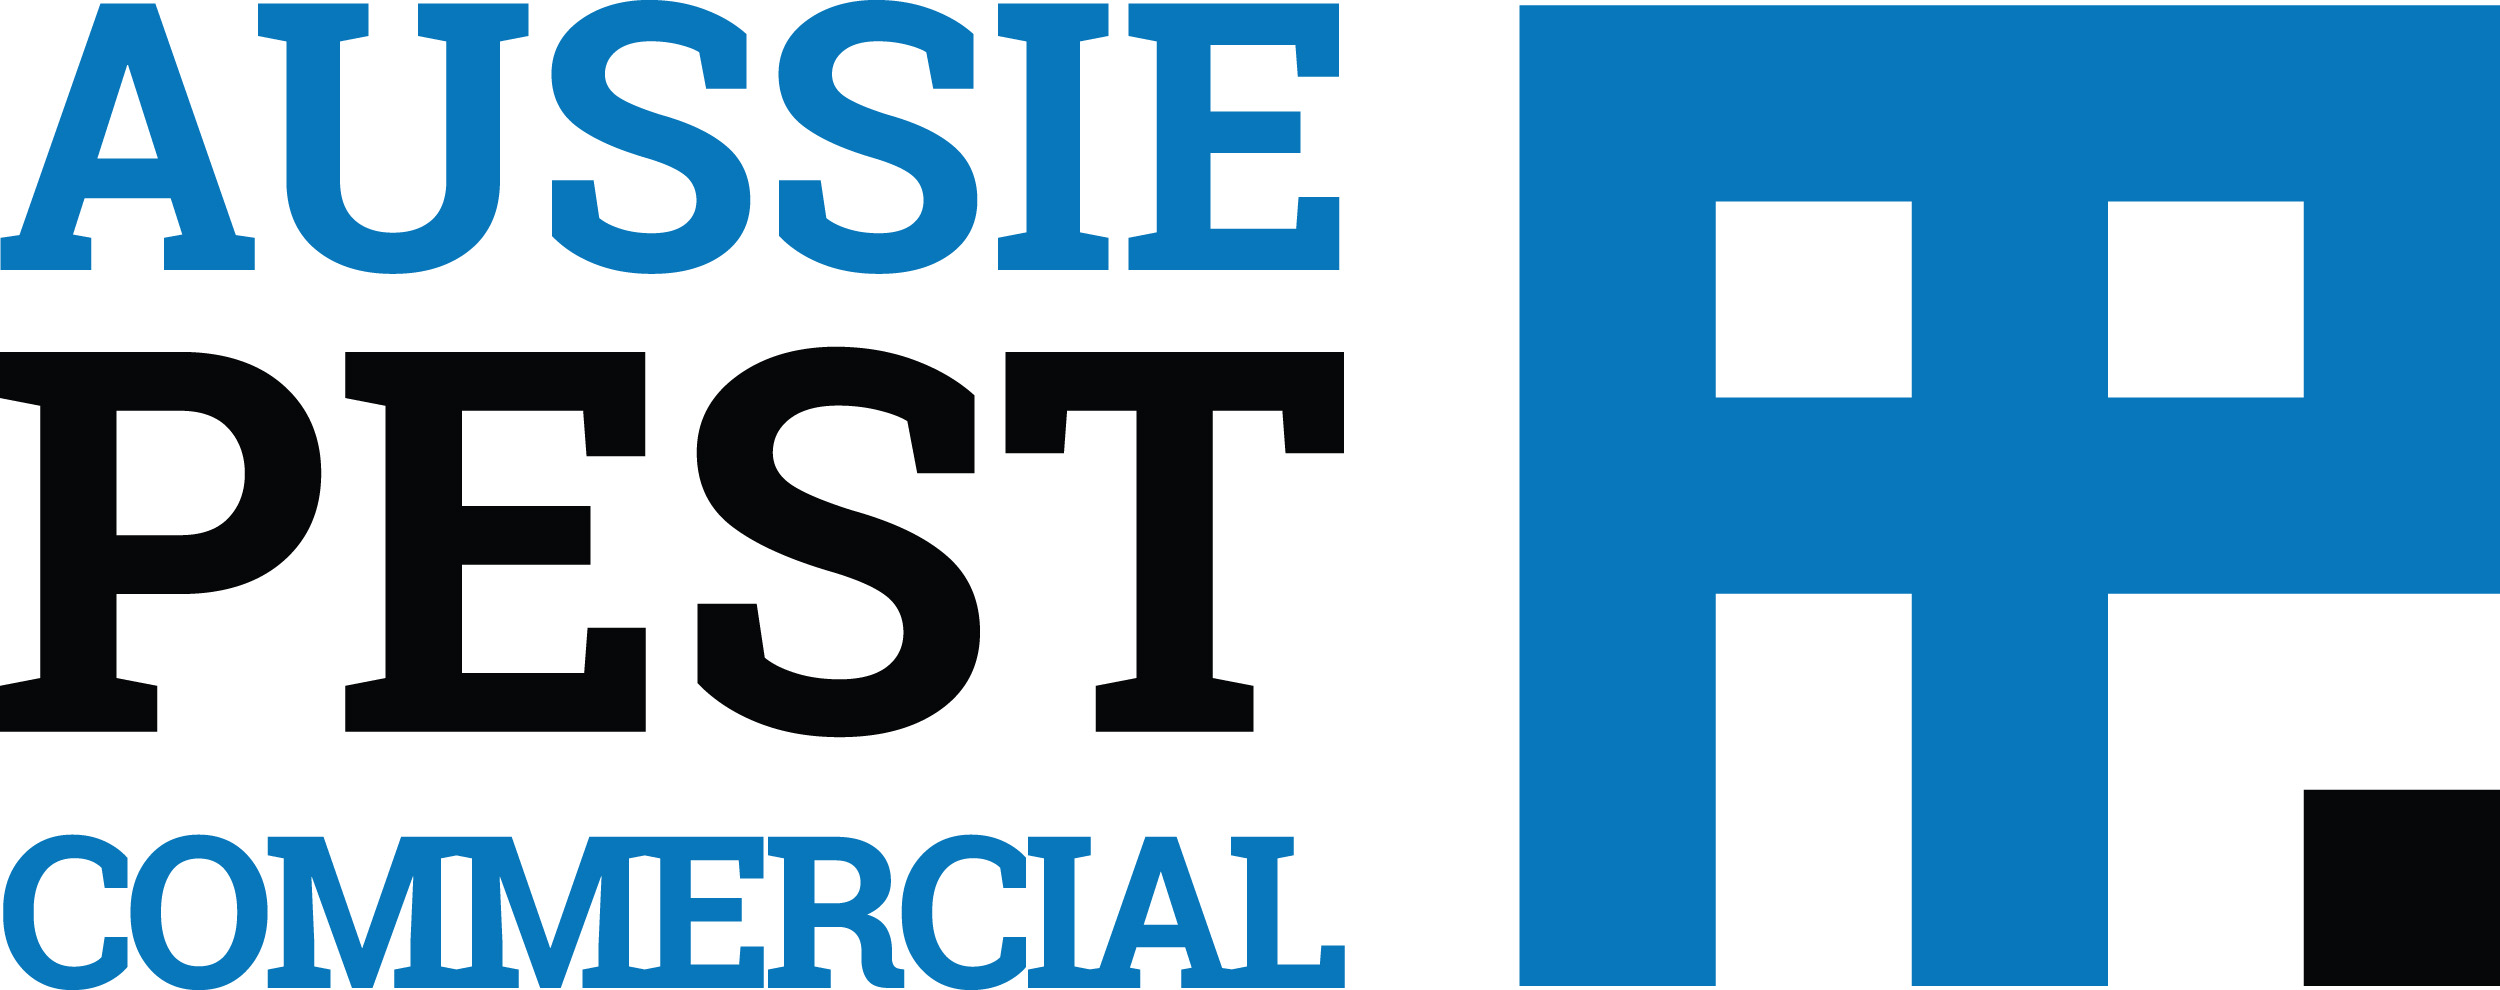 Aussie Pest Commercial Logo